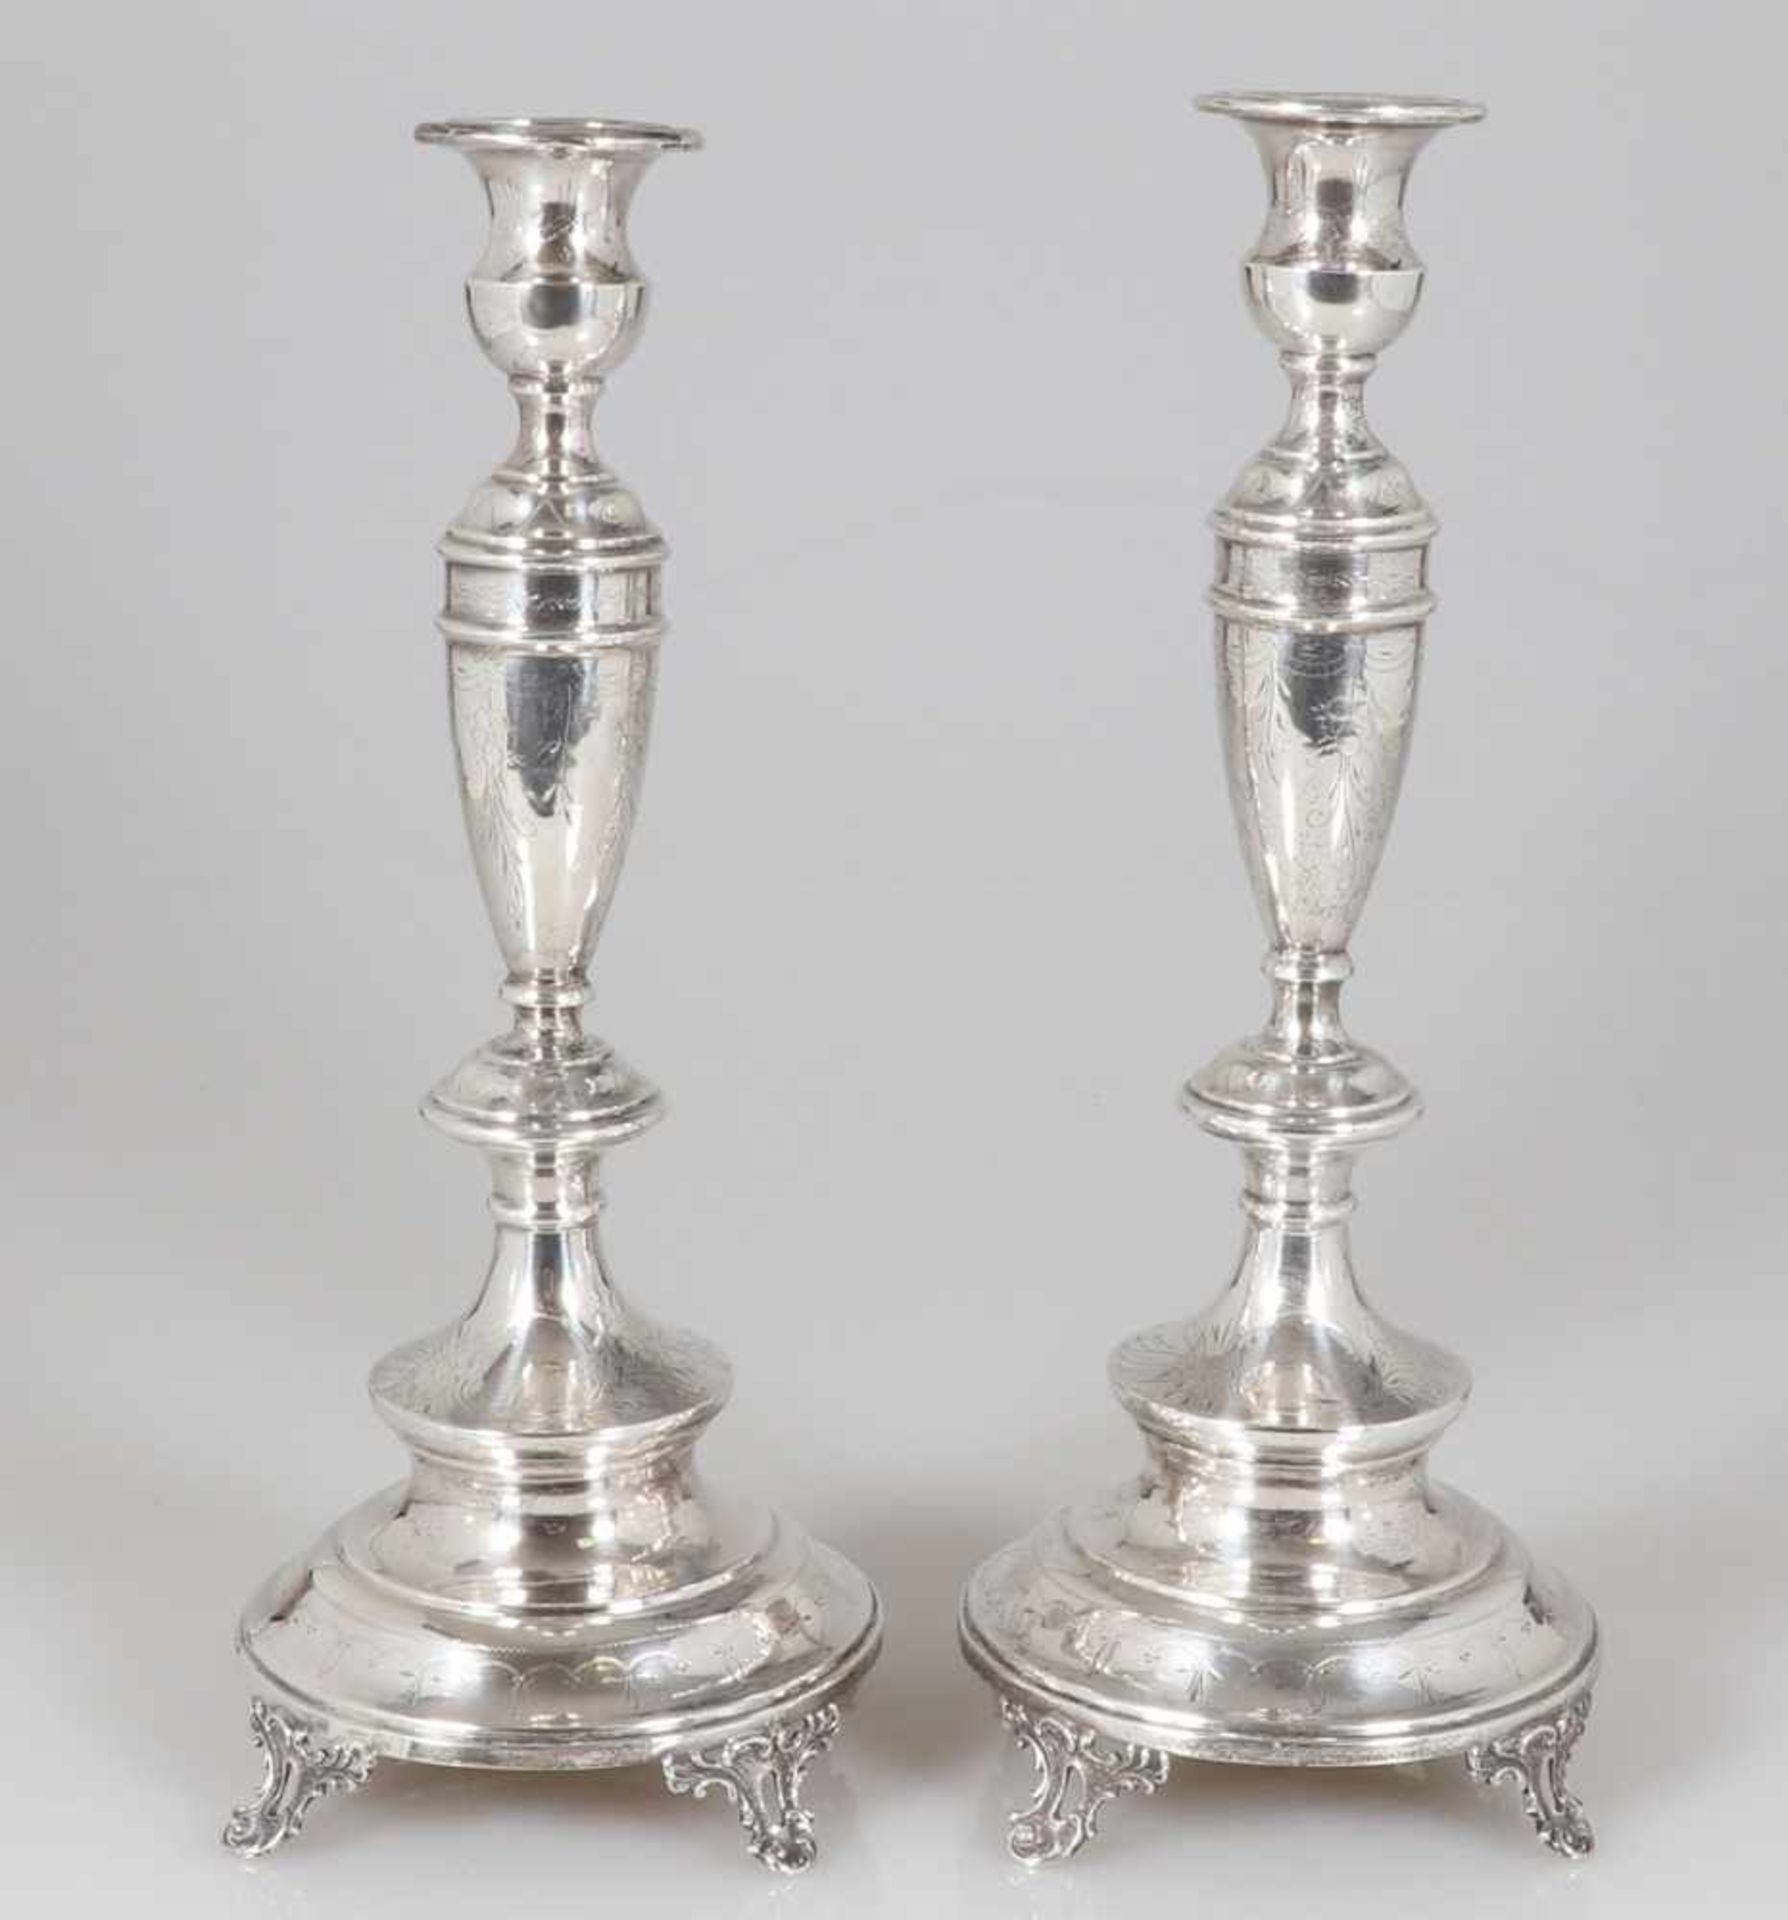 Paar TafelleuchterWien/Österreich, um 1880. 800er Silber. Punzen: Herst.-Marke, Dianakopf. H. 34,5